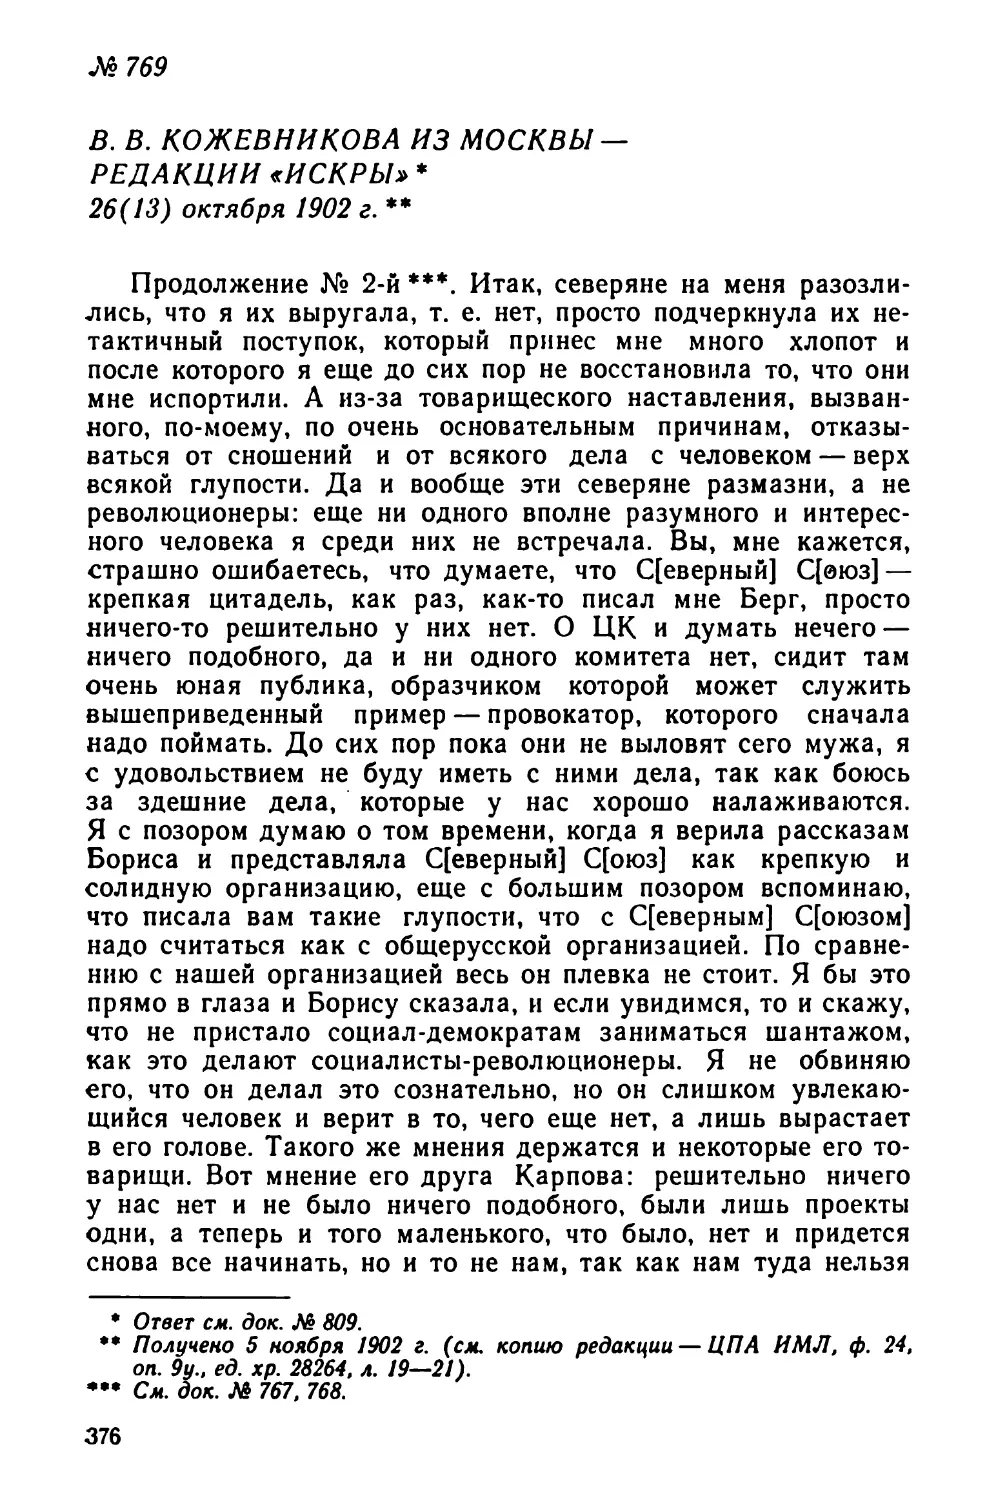 № 769 В. В. Кожевникова из Москвы — редакции «Искры». 26 октября